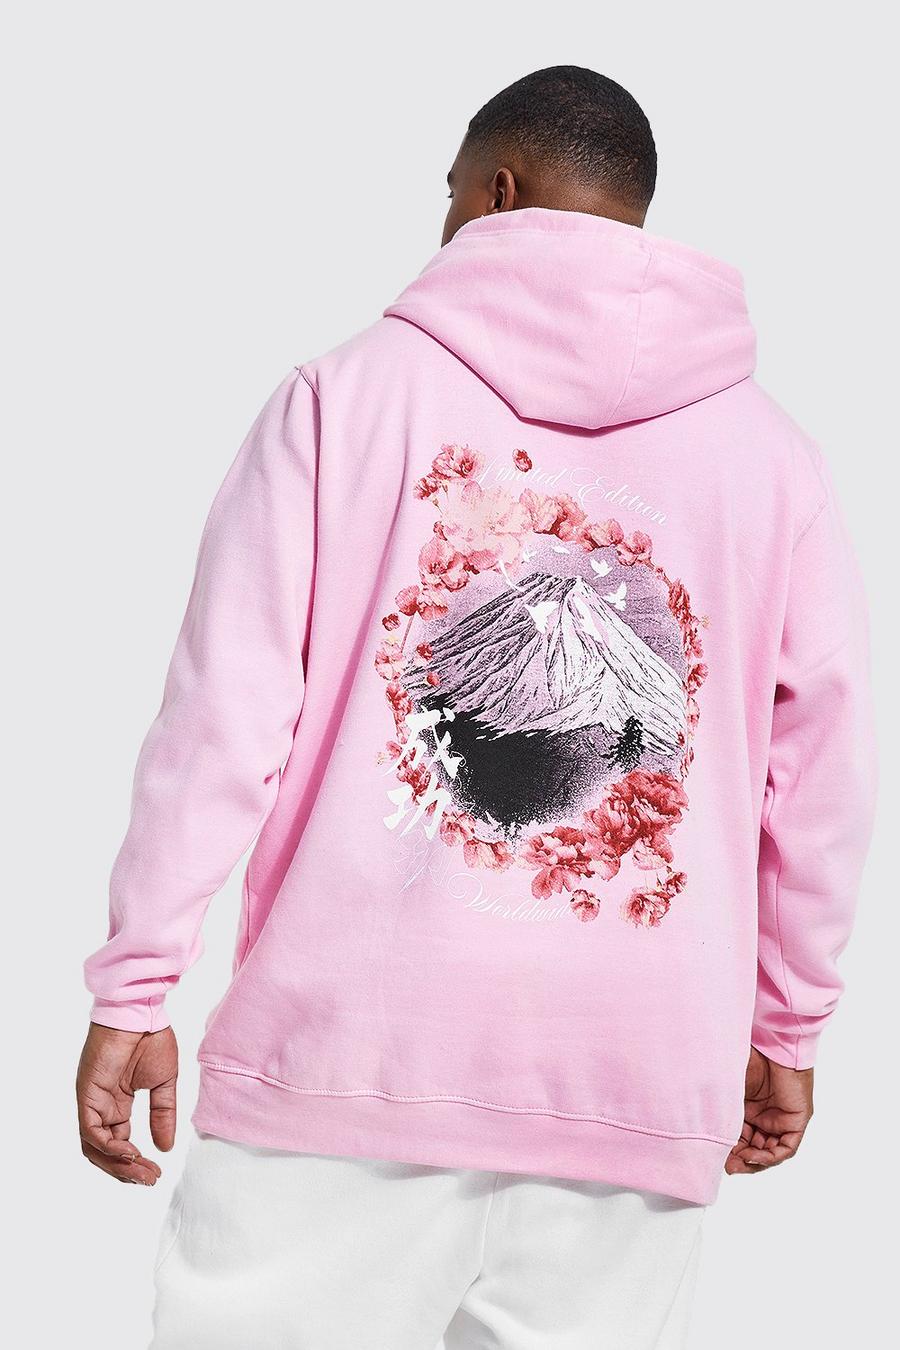 Sudadera Plus con capucha y estampado de flores de cerezo Fuji en la espalda, Light pink